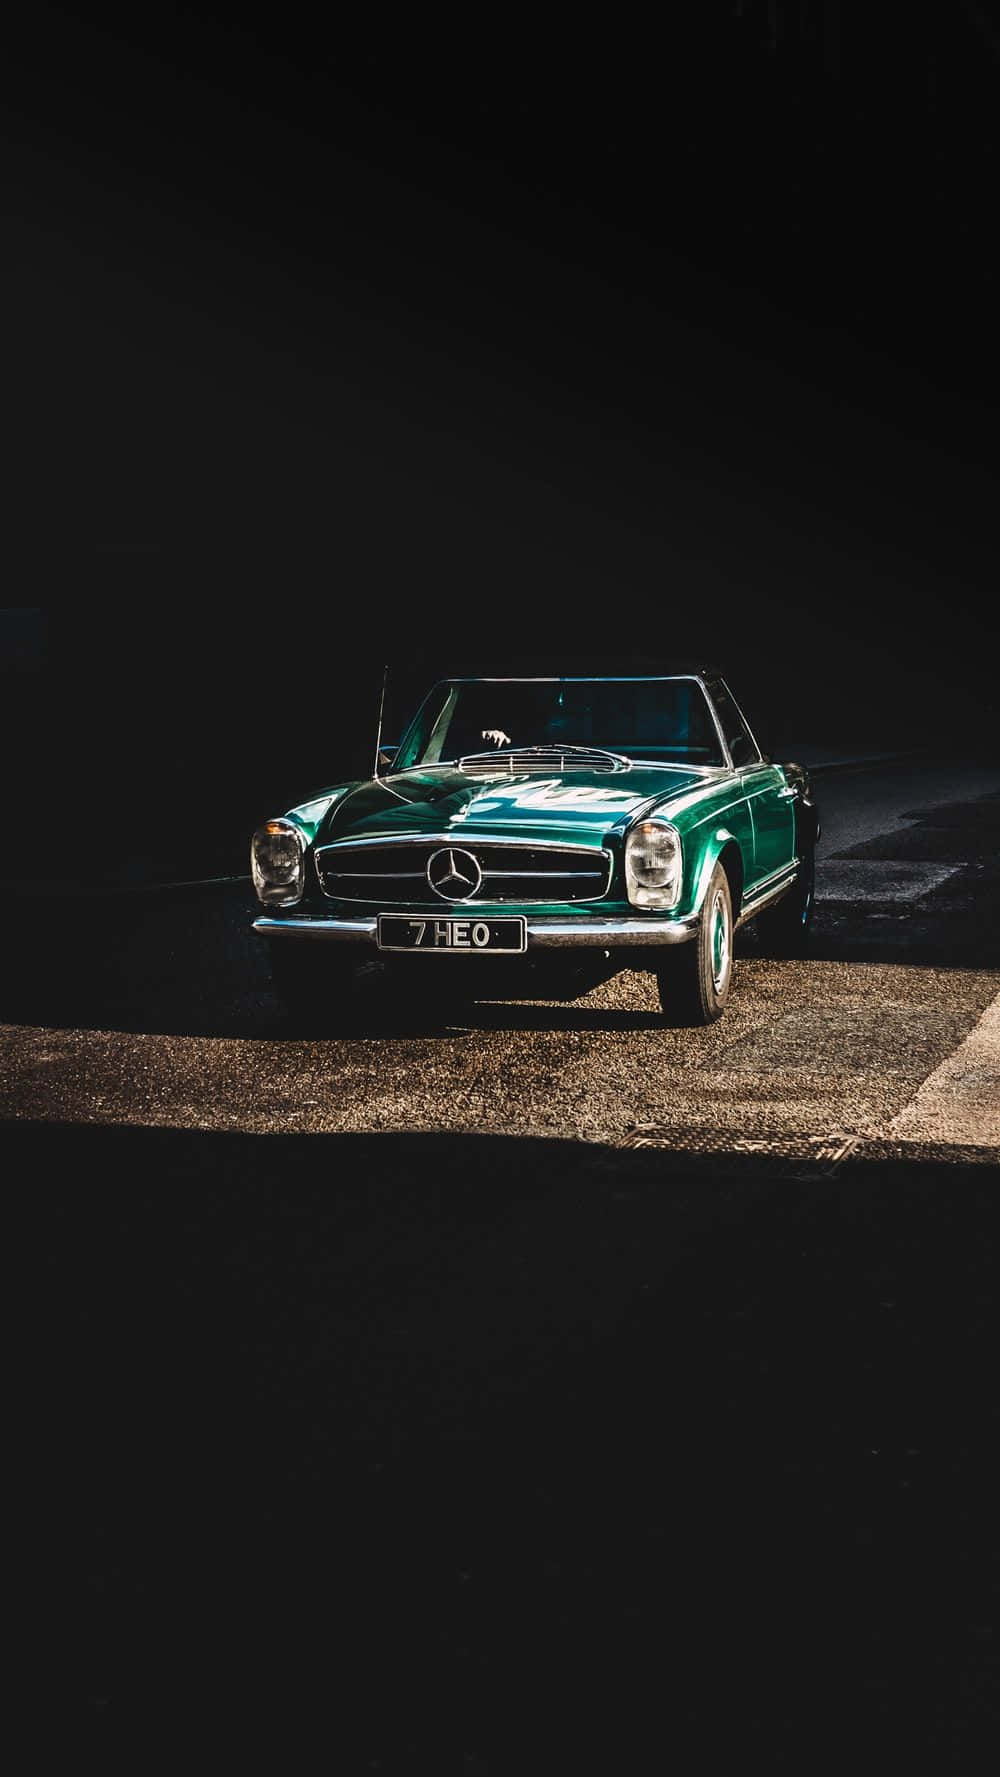 Fange et øjeblik af luksus – En klassisk Mercedes indrammet i elegance Wallpaper